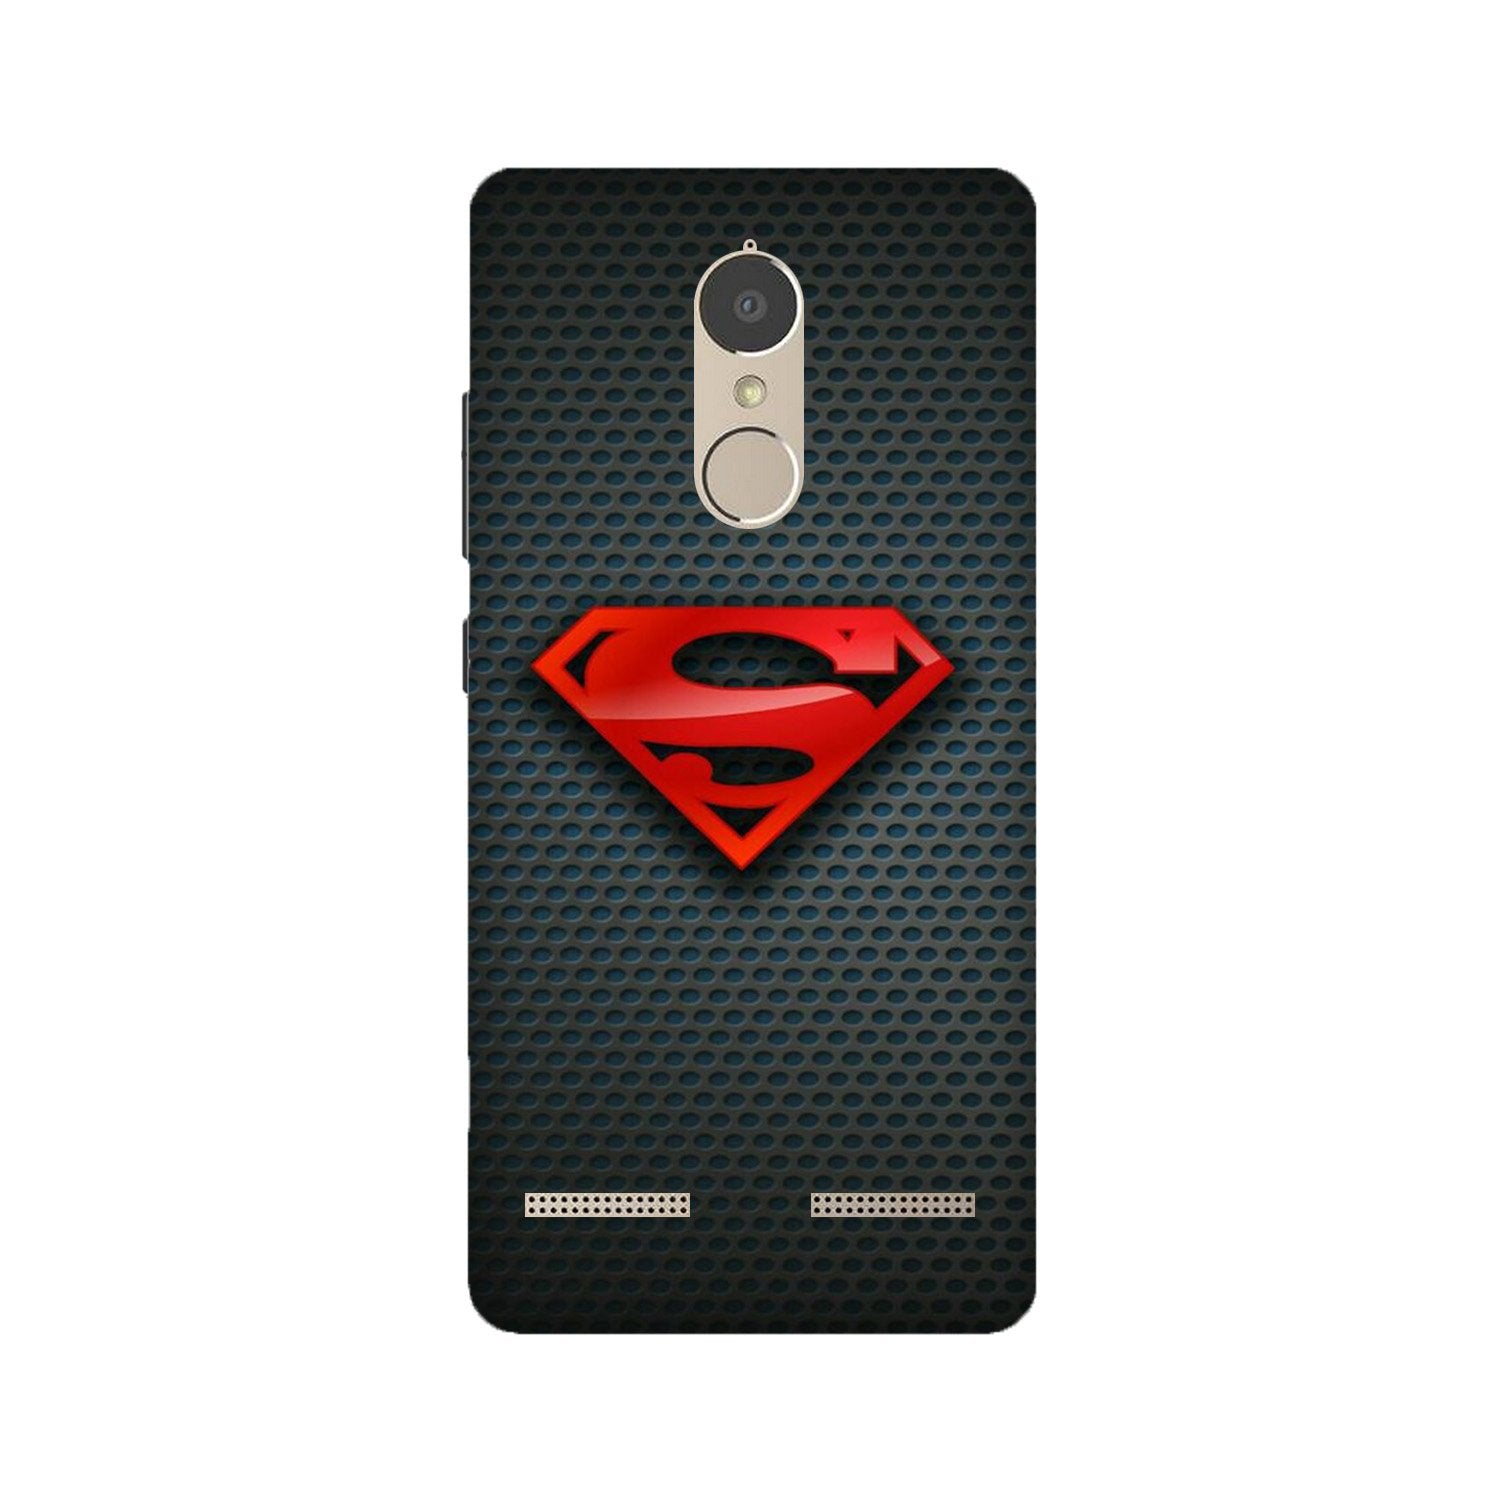 Superman Case for Lenovo K6 / K6 Power (Design No. 247)